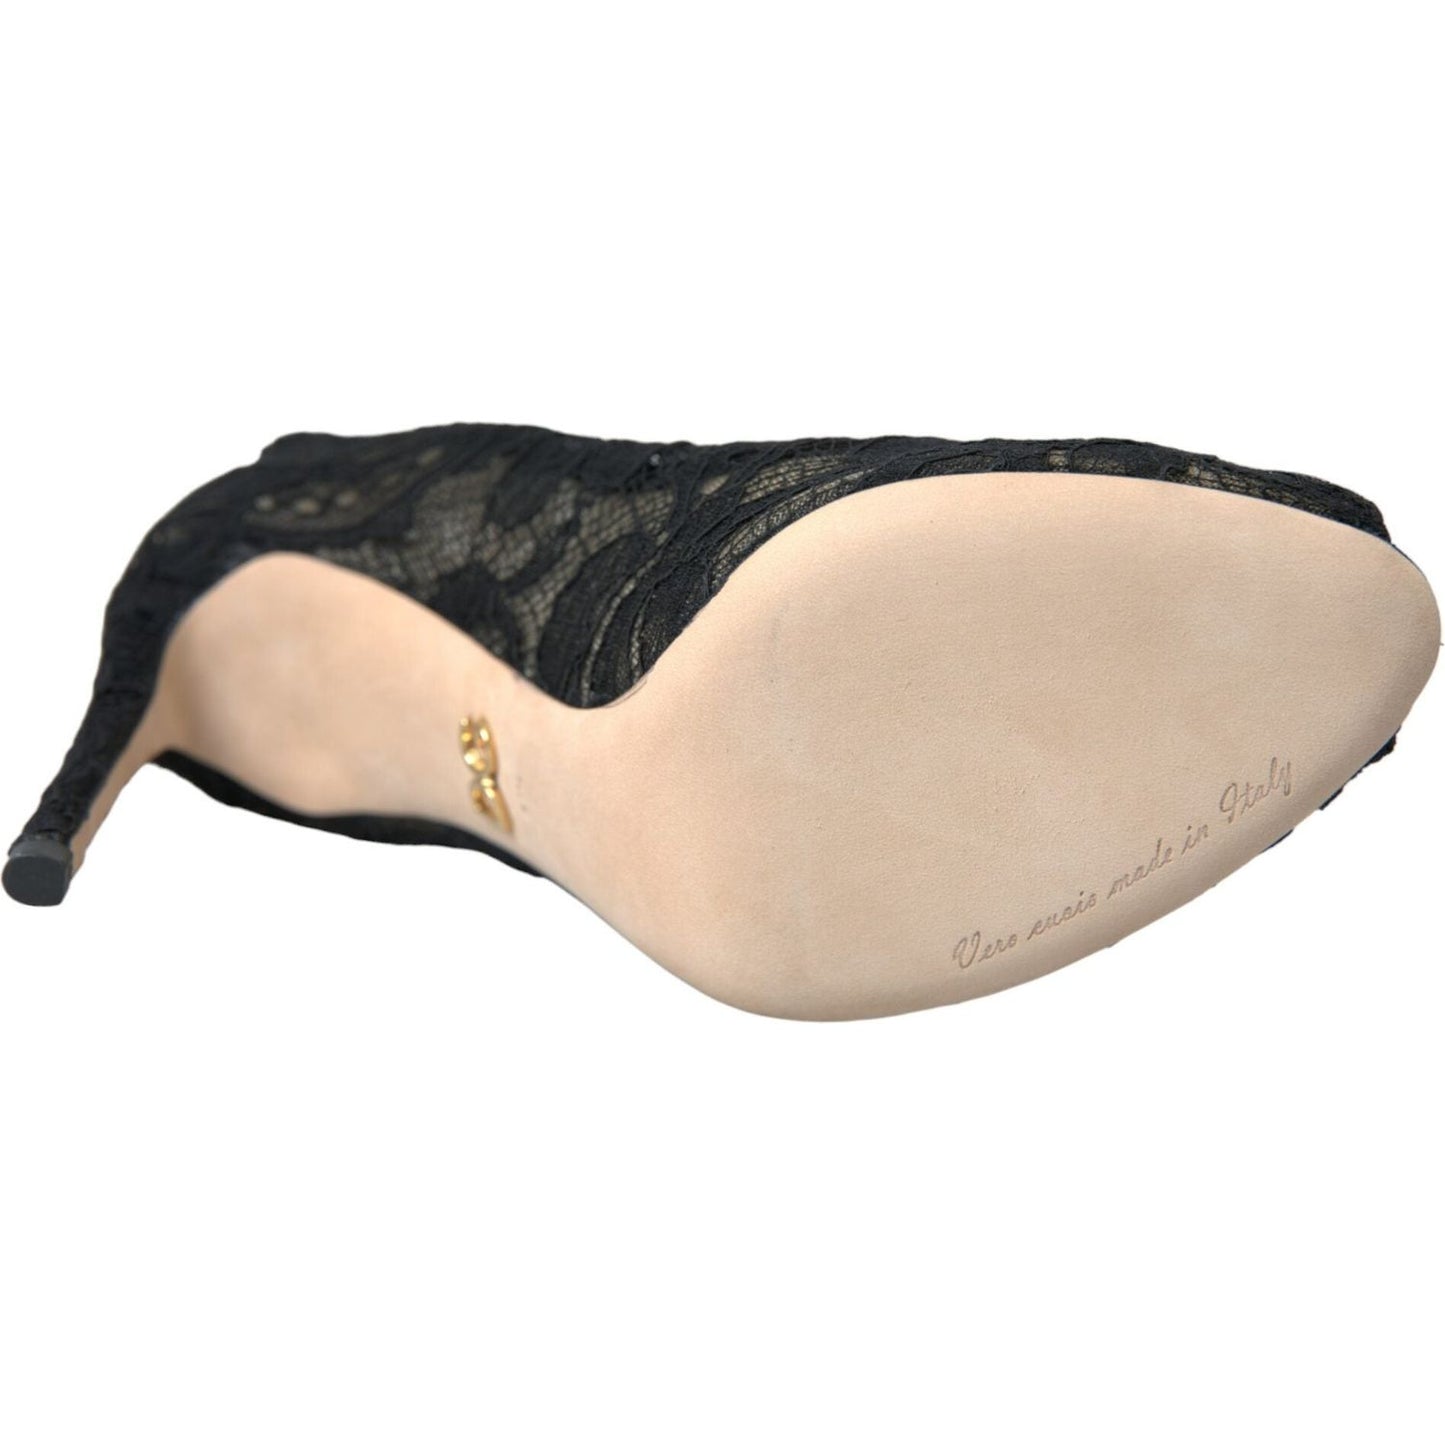 Dolce & Gabbana Black Stretch Taormina Lace Boots Shoes black-stretch-taormina-lace-boots-shoes